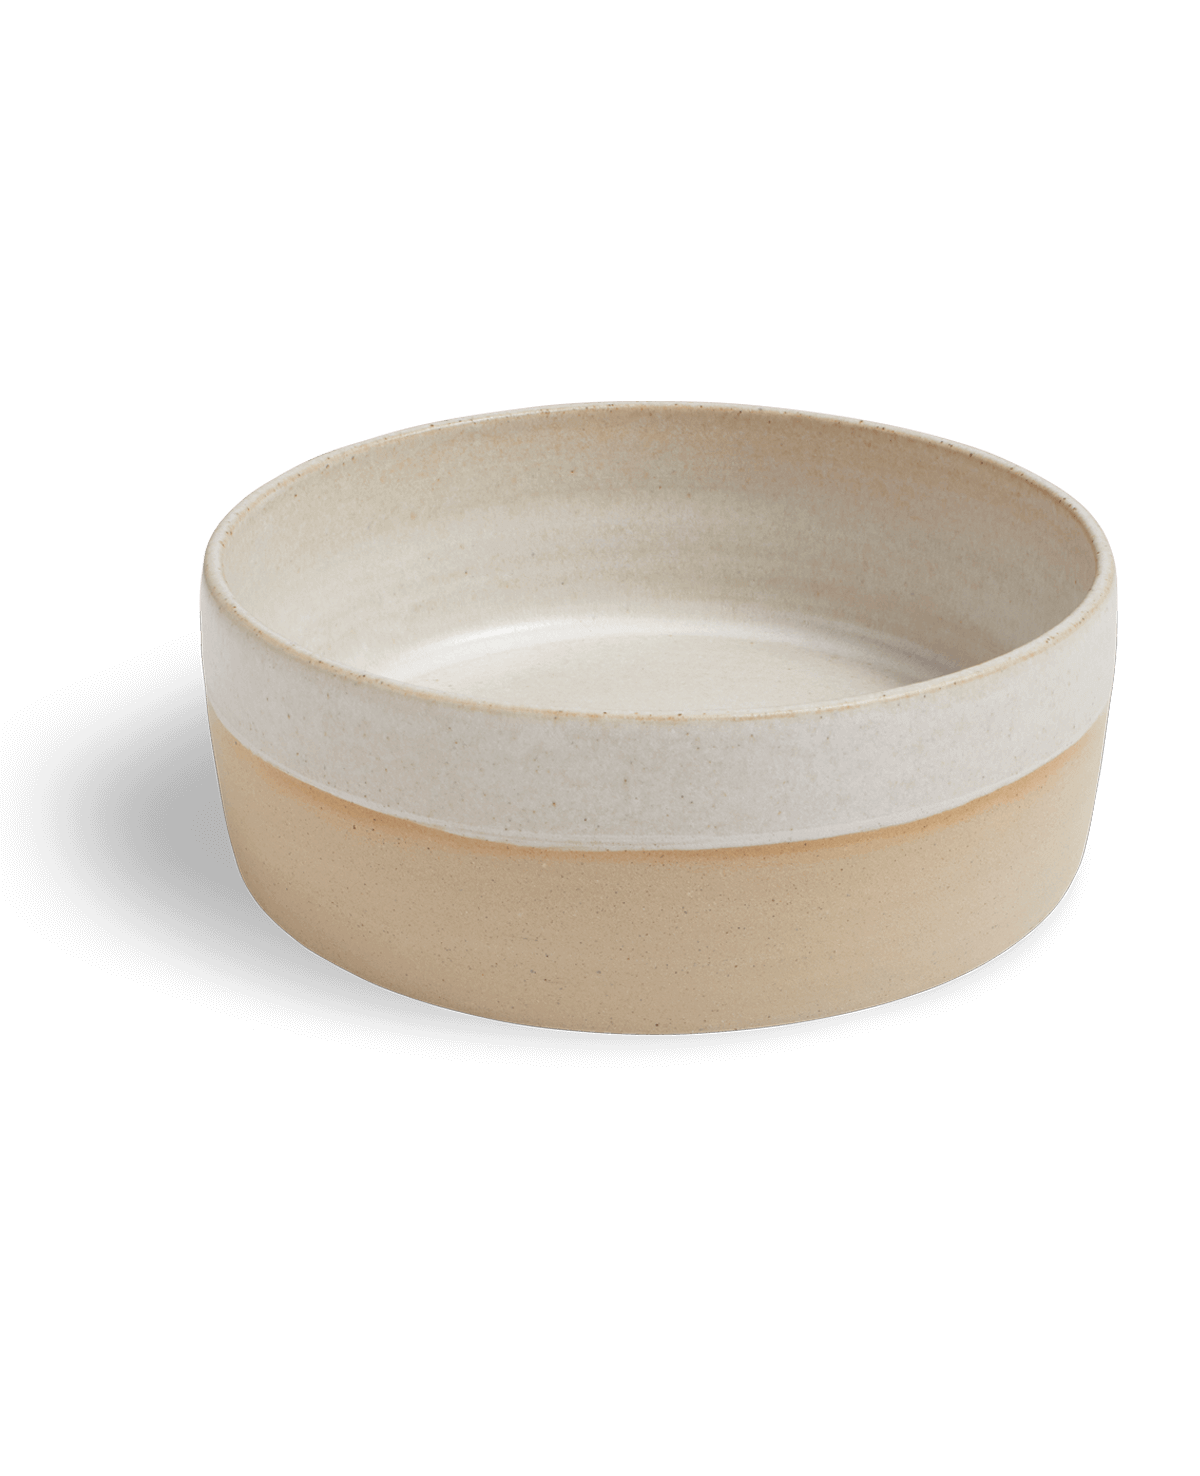 Ceramic Dog Food Bowl | Large | White | by Pawness - Lifestory - Pawness